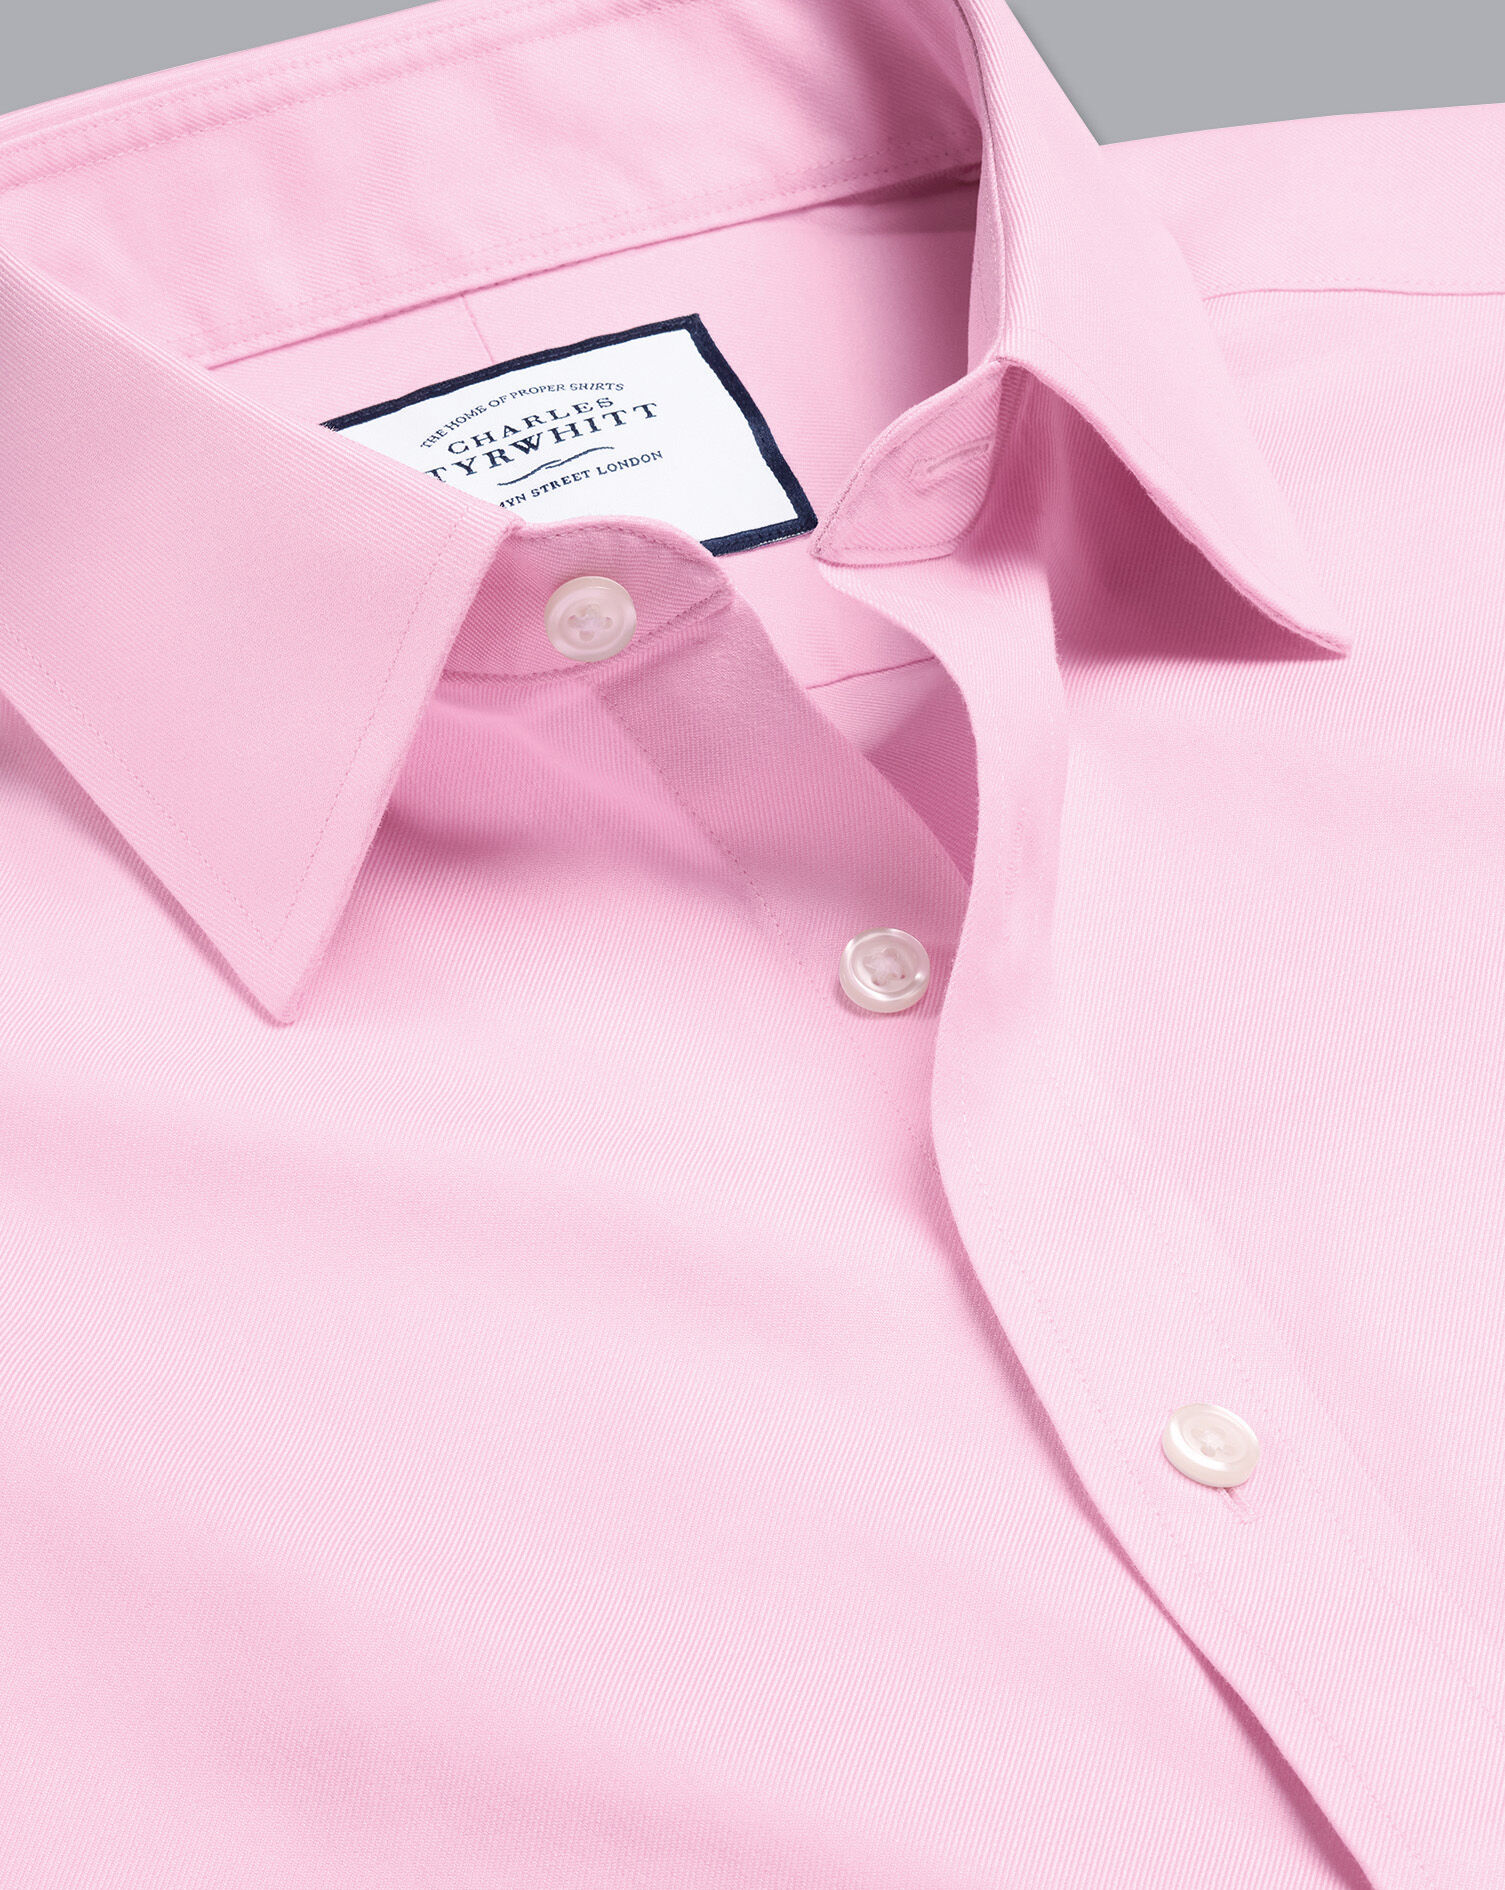 Men's Shirt Non Iron Formal Light Pink Twill  Button Cuff 